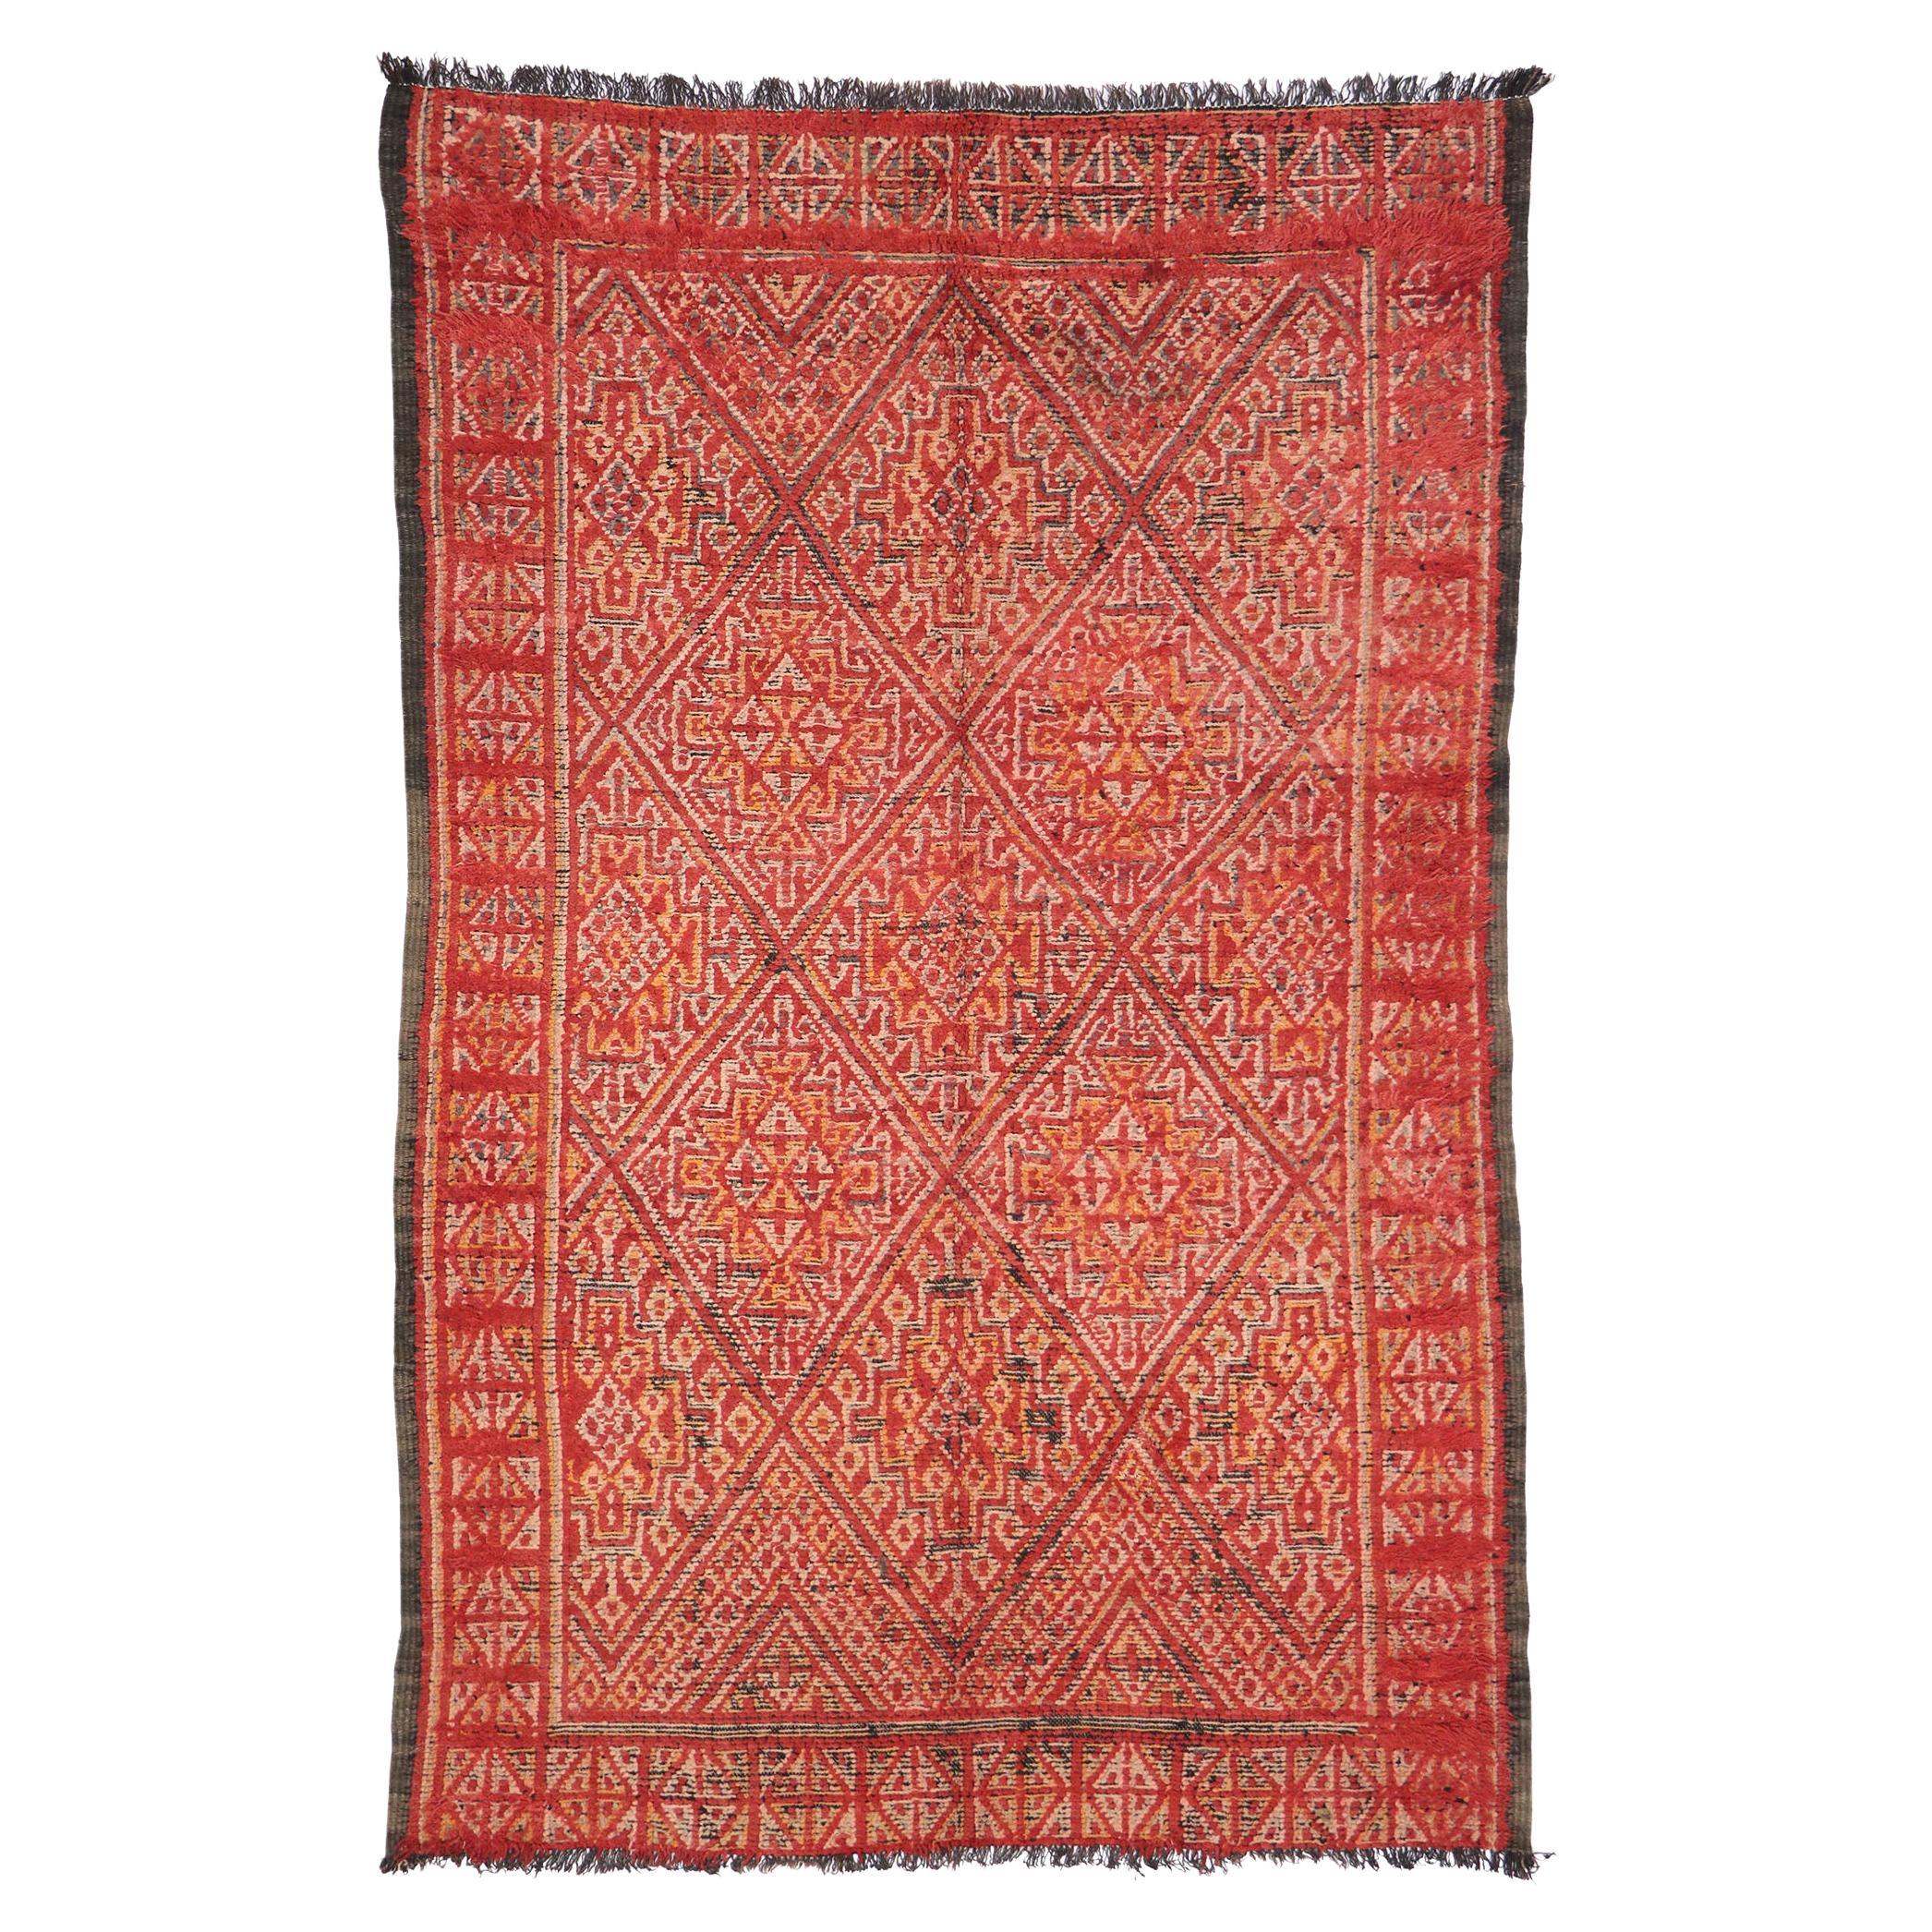 Marokkanischer roter Beni MGuild Vintage-Teppich im Vintage-Stil, Midcentury Meets Global Bohemian